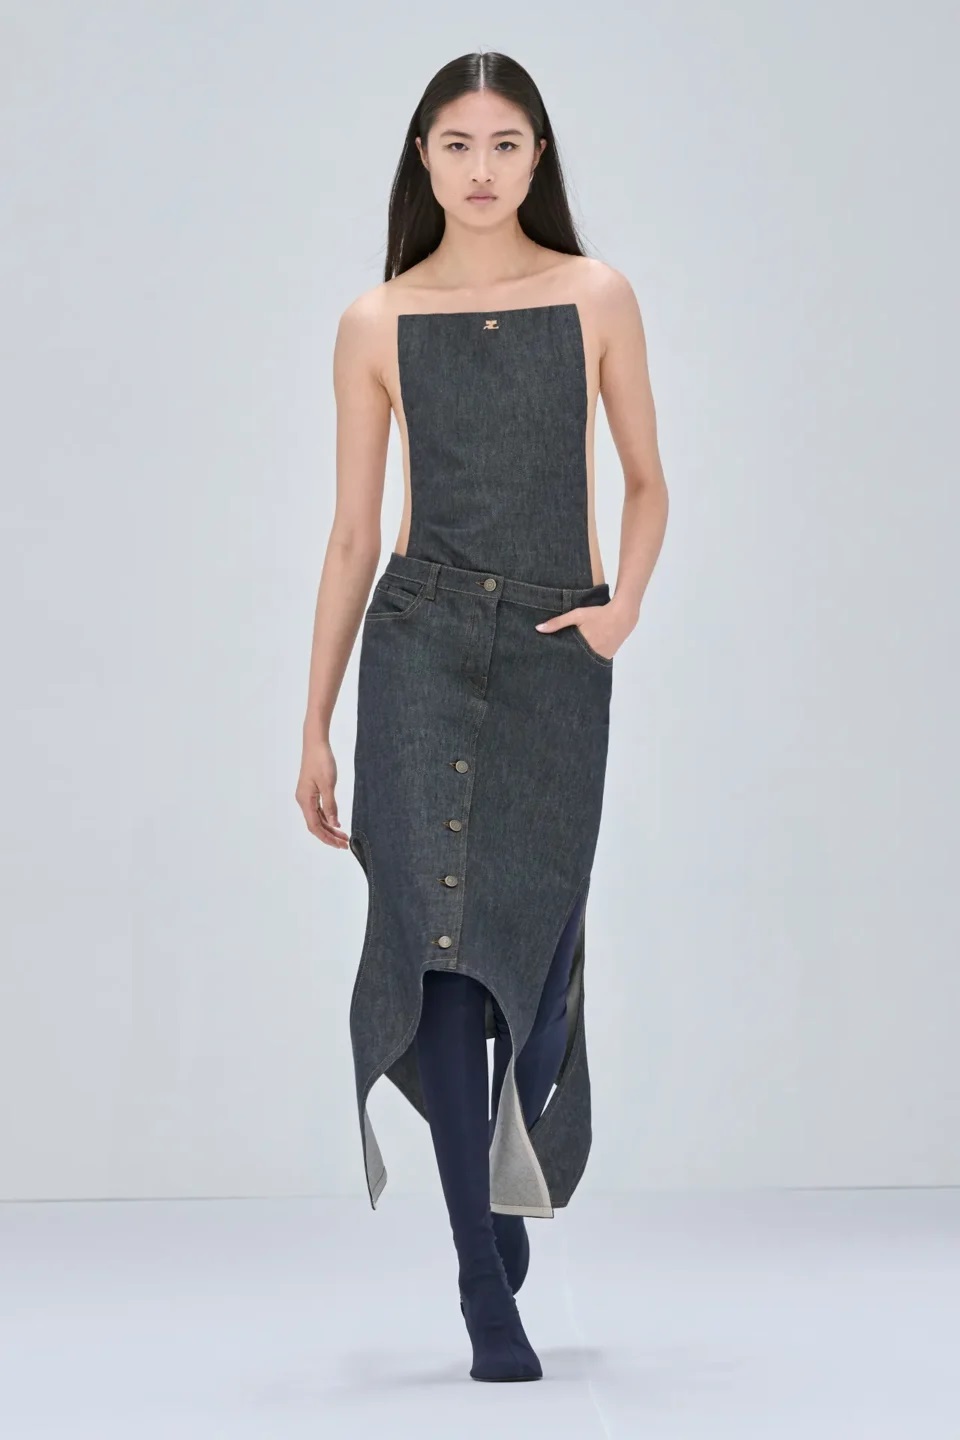 Aluna da ESPM é selecionada para representar o Brasil em programa de moda  da Dior - Guia JeansWear